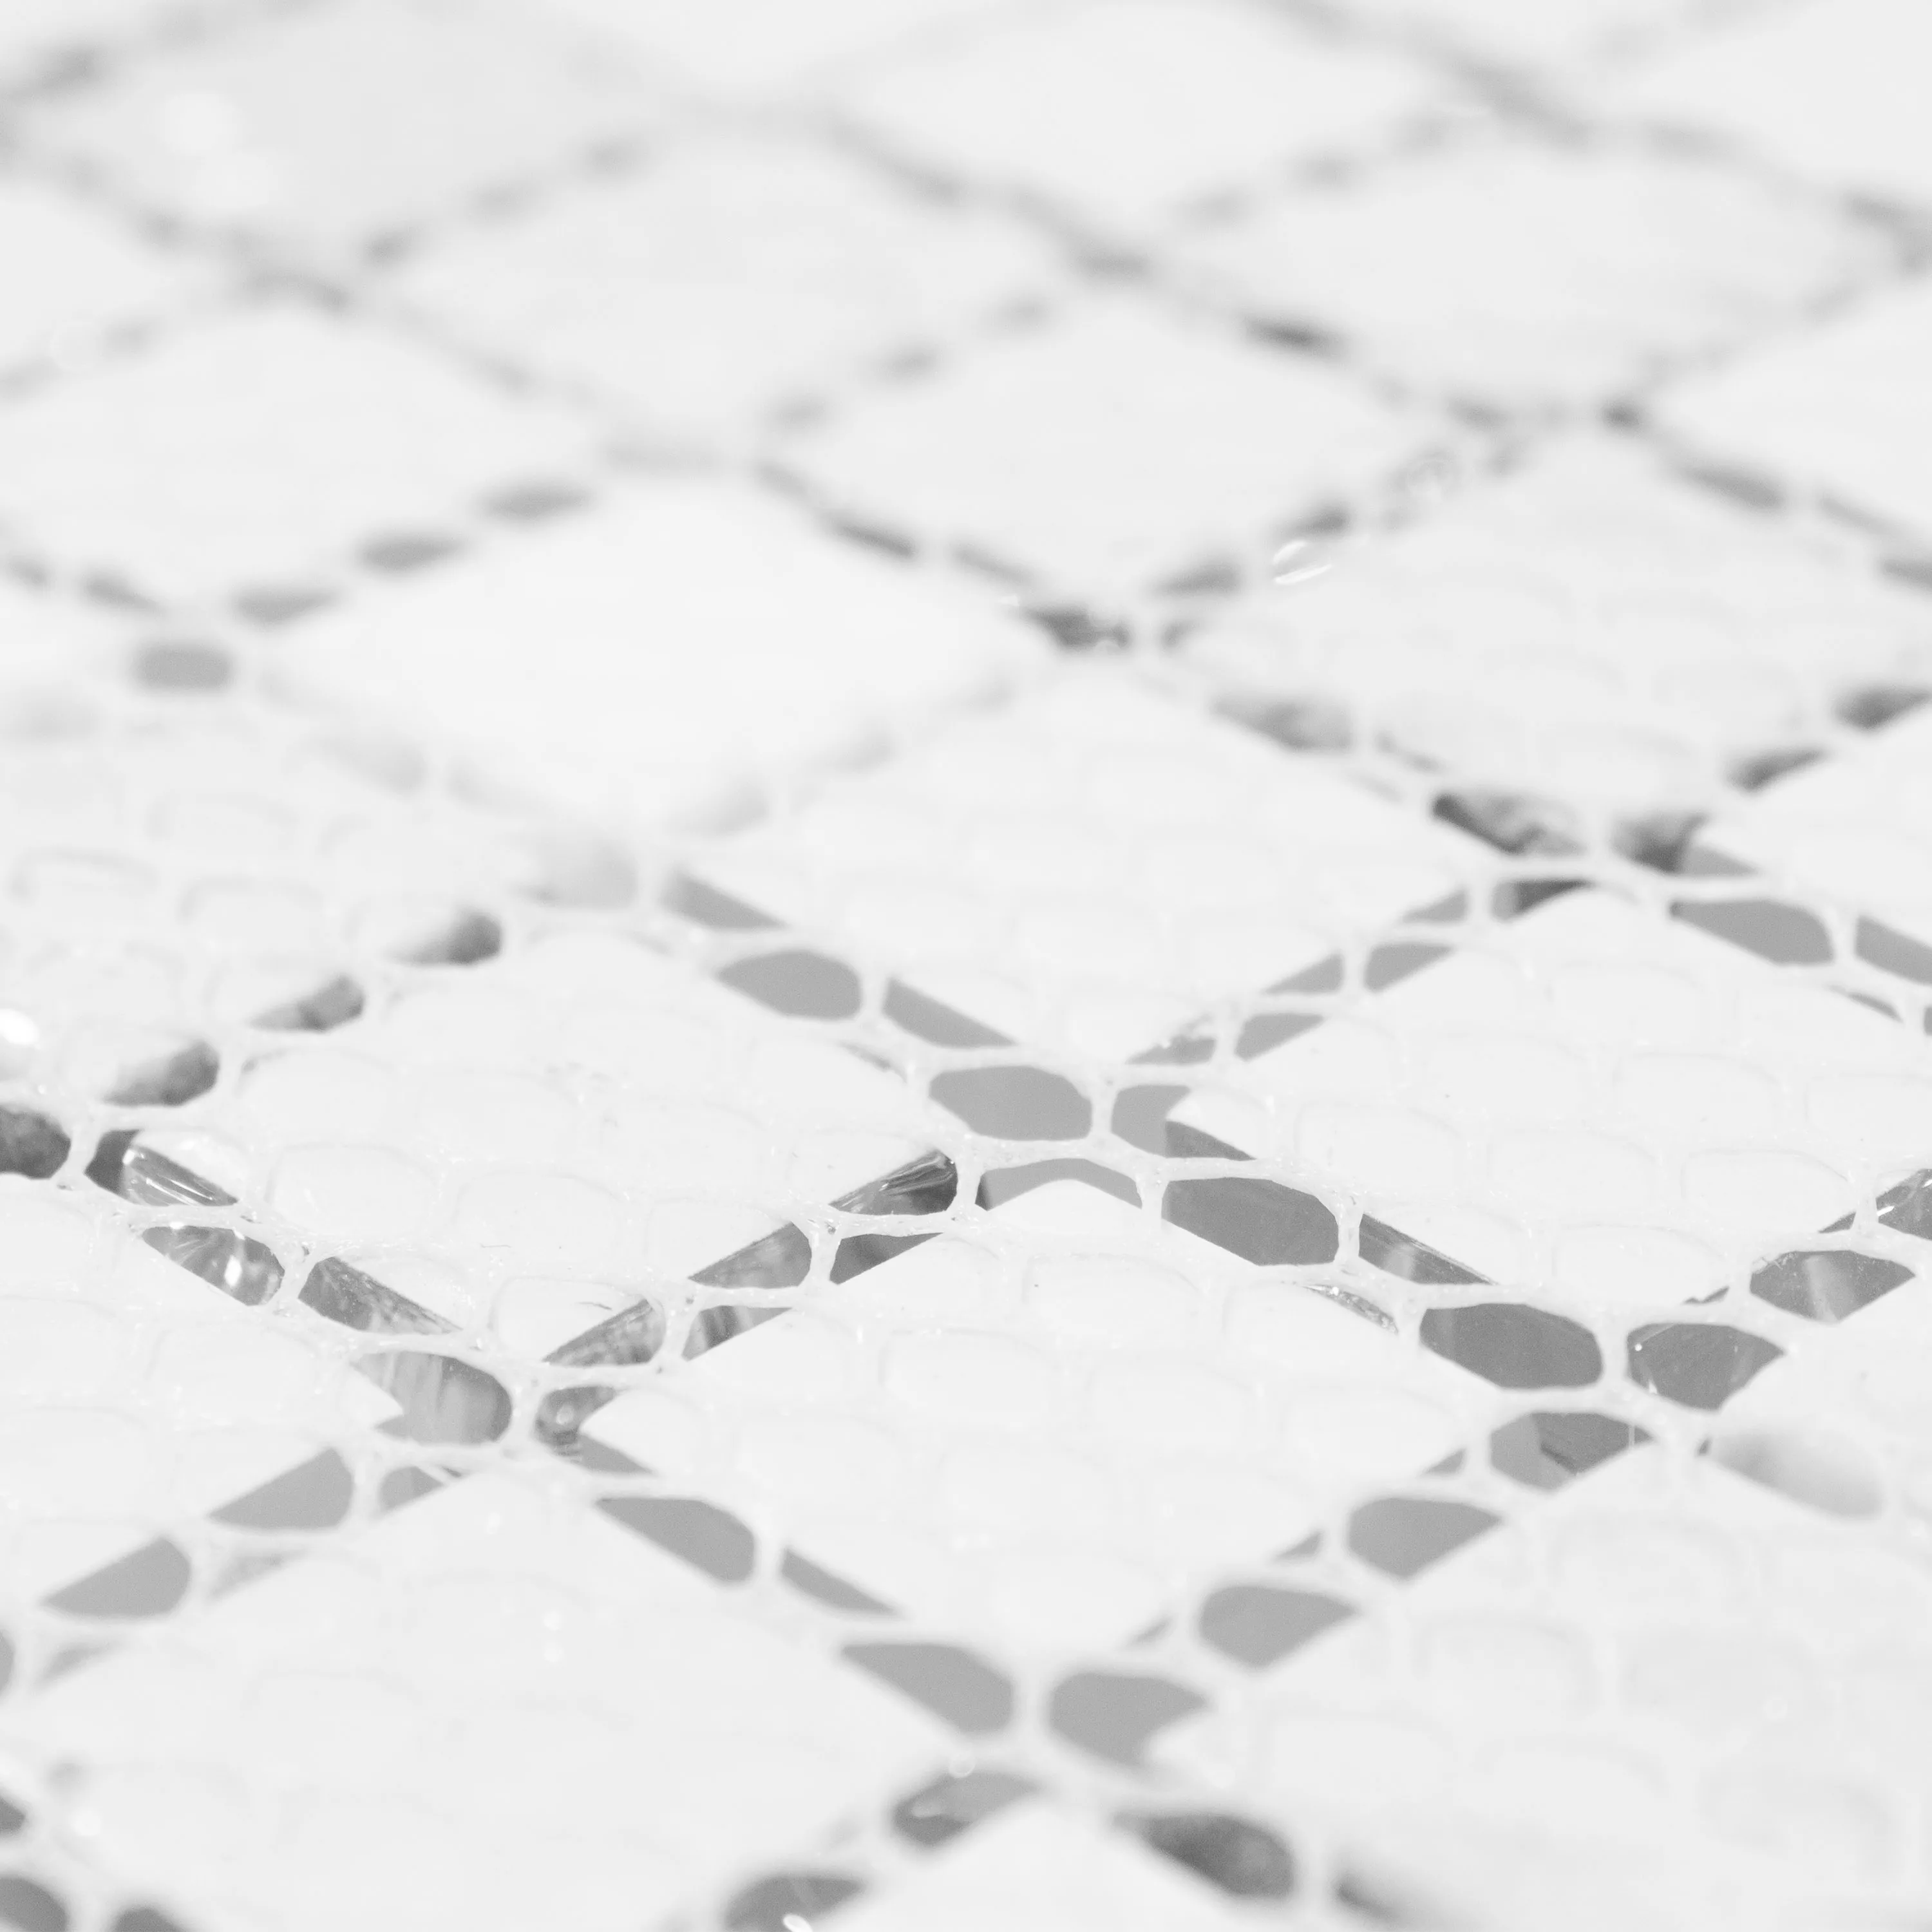 Campione Mosaico Di Vetro Piastrelle Lexington Vetro Mix di Materiali Bianco